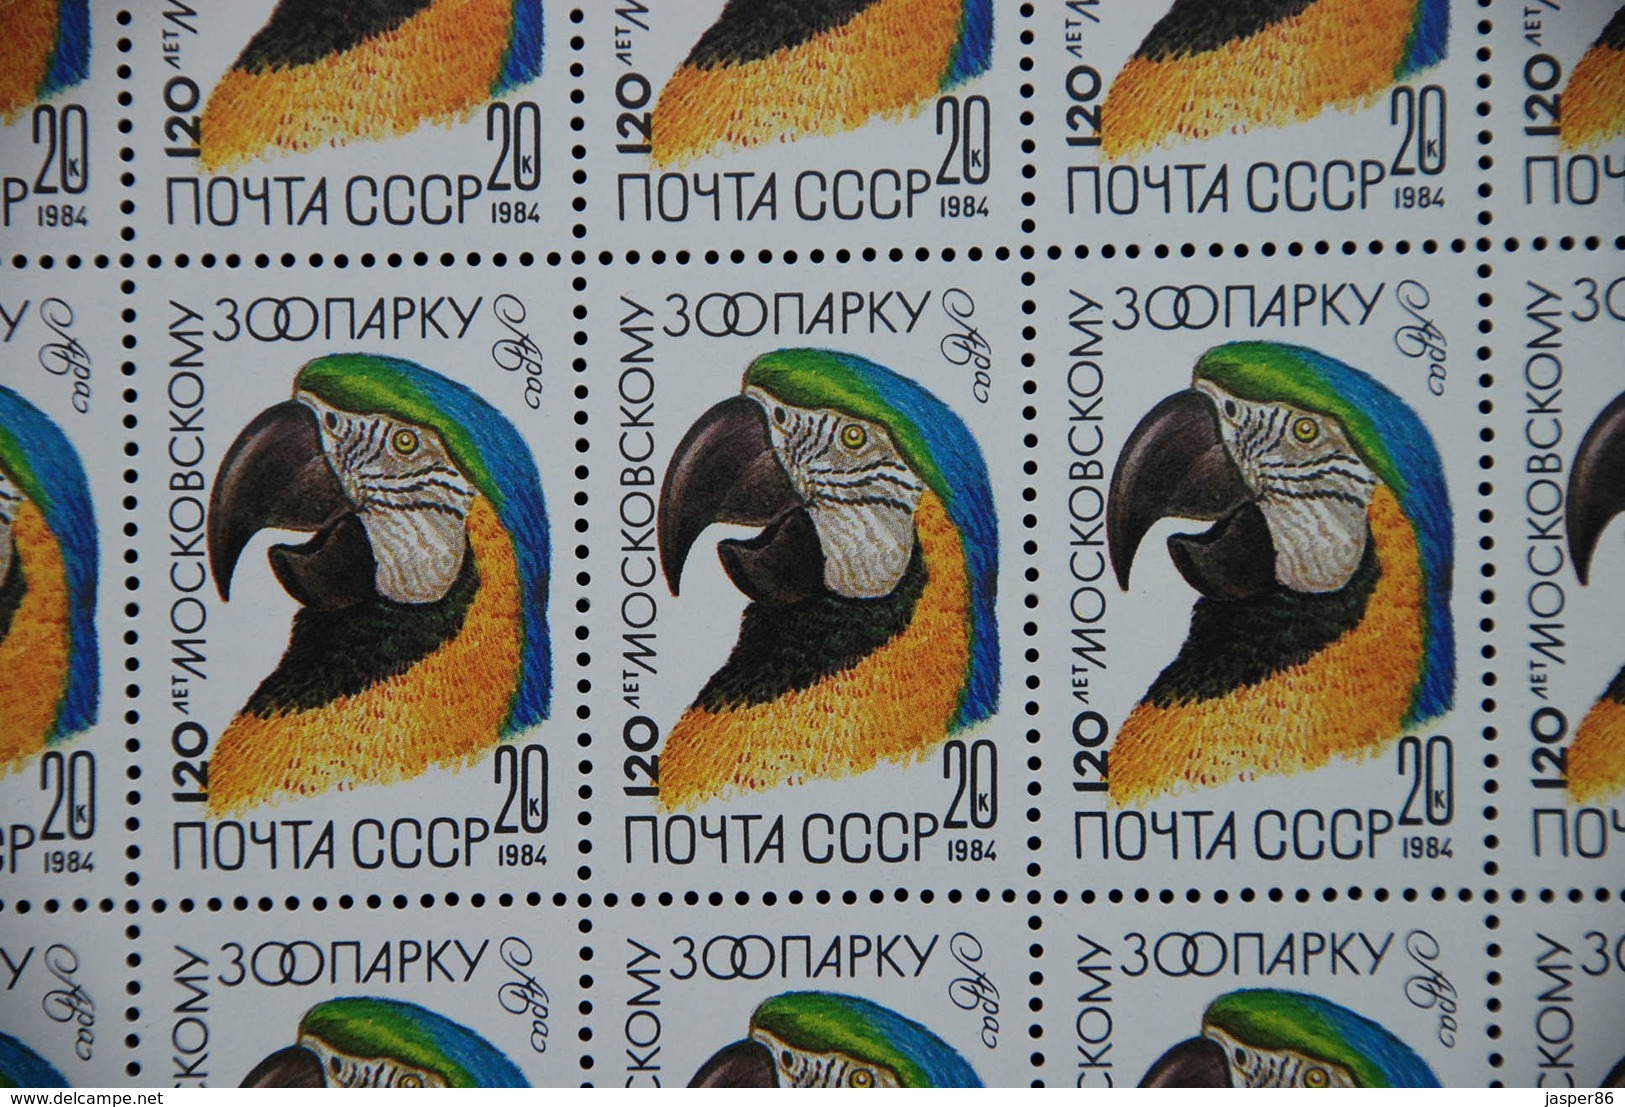 RUSSIA 1984 MNH Sc 5226-30, Mi 5356-60 Macaw, Crane, Leopard Sheets CV46.80 EU - Hojas Completas